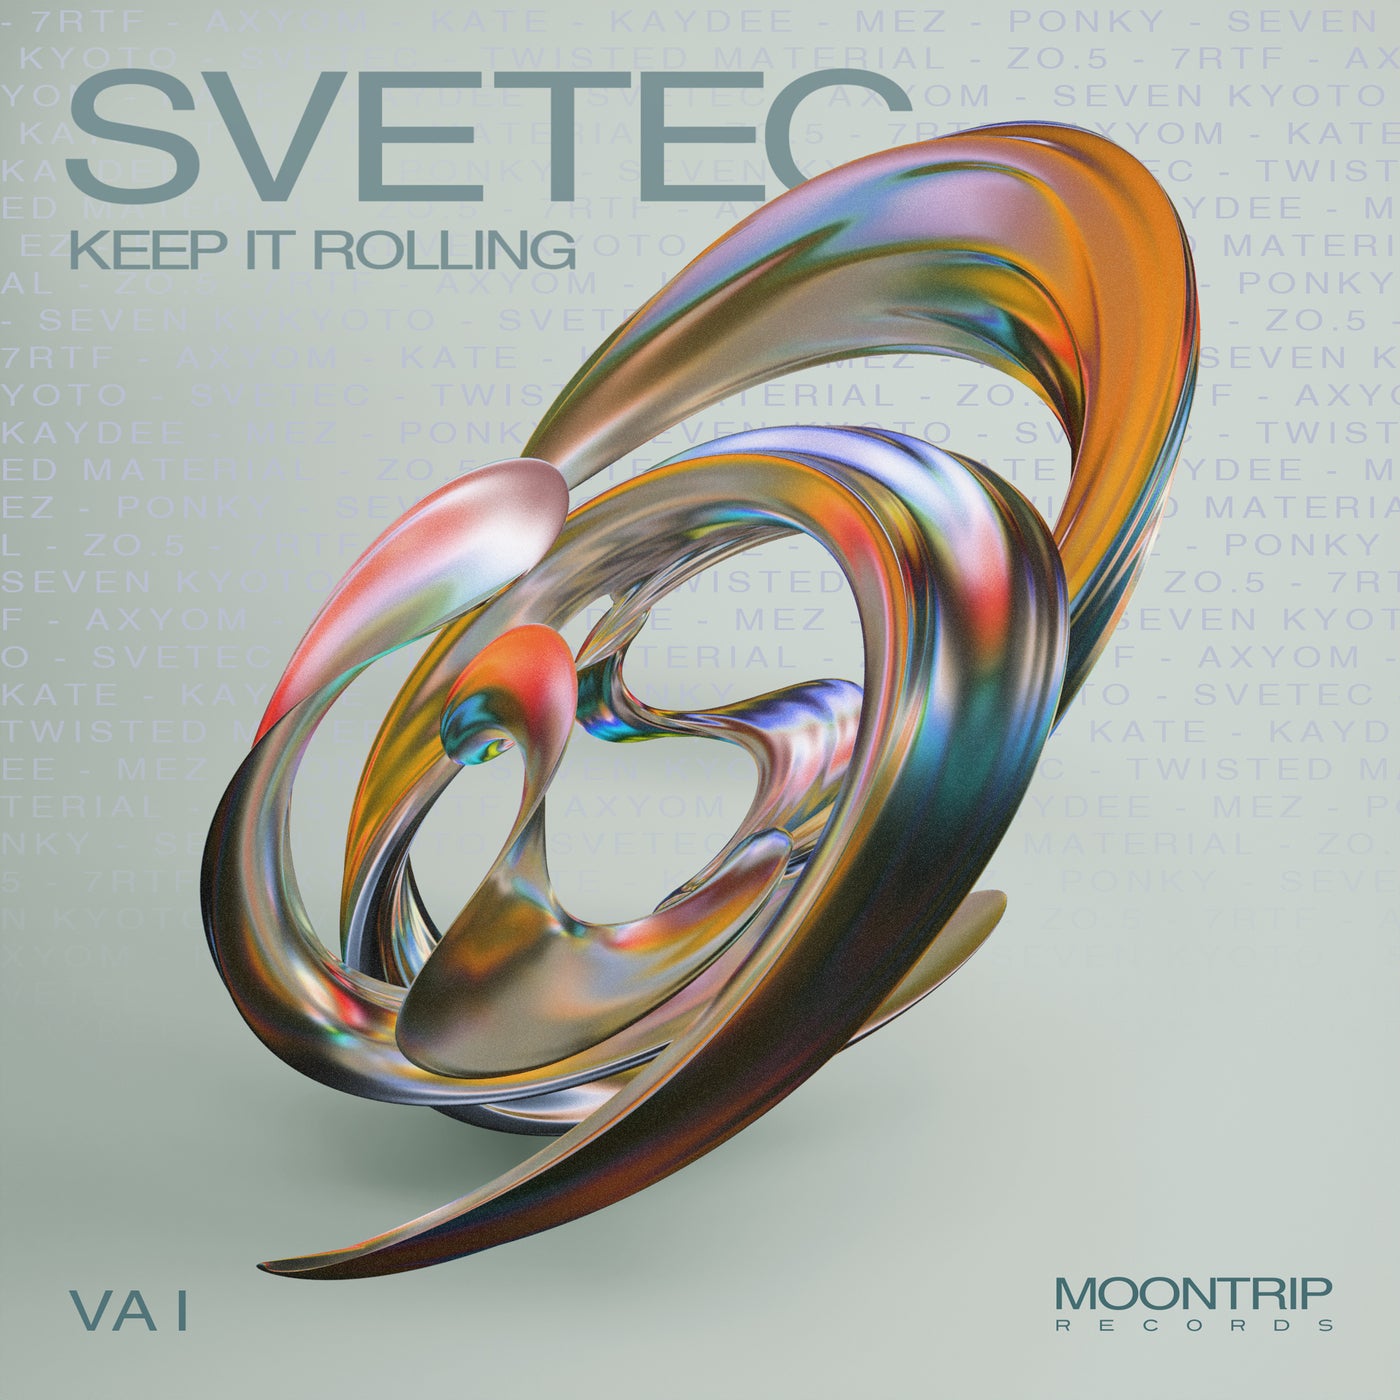 Cover - SveTec - Keep It Rolling (Original Mix)